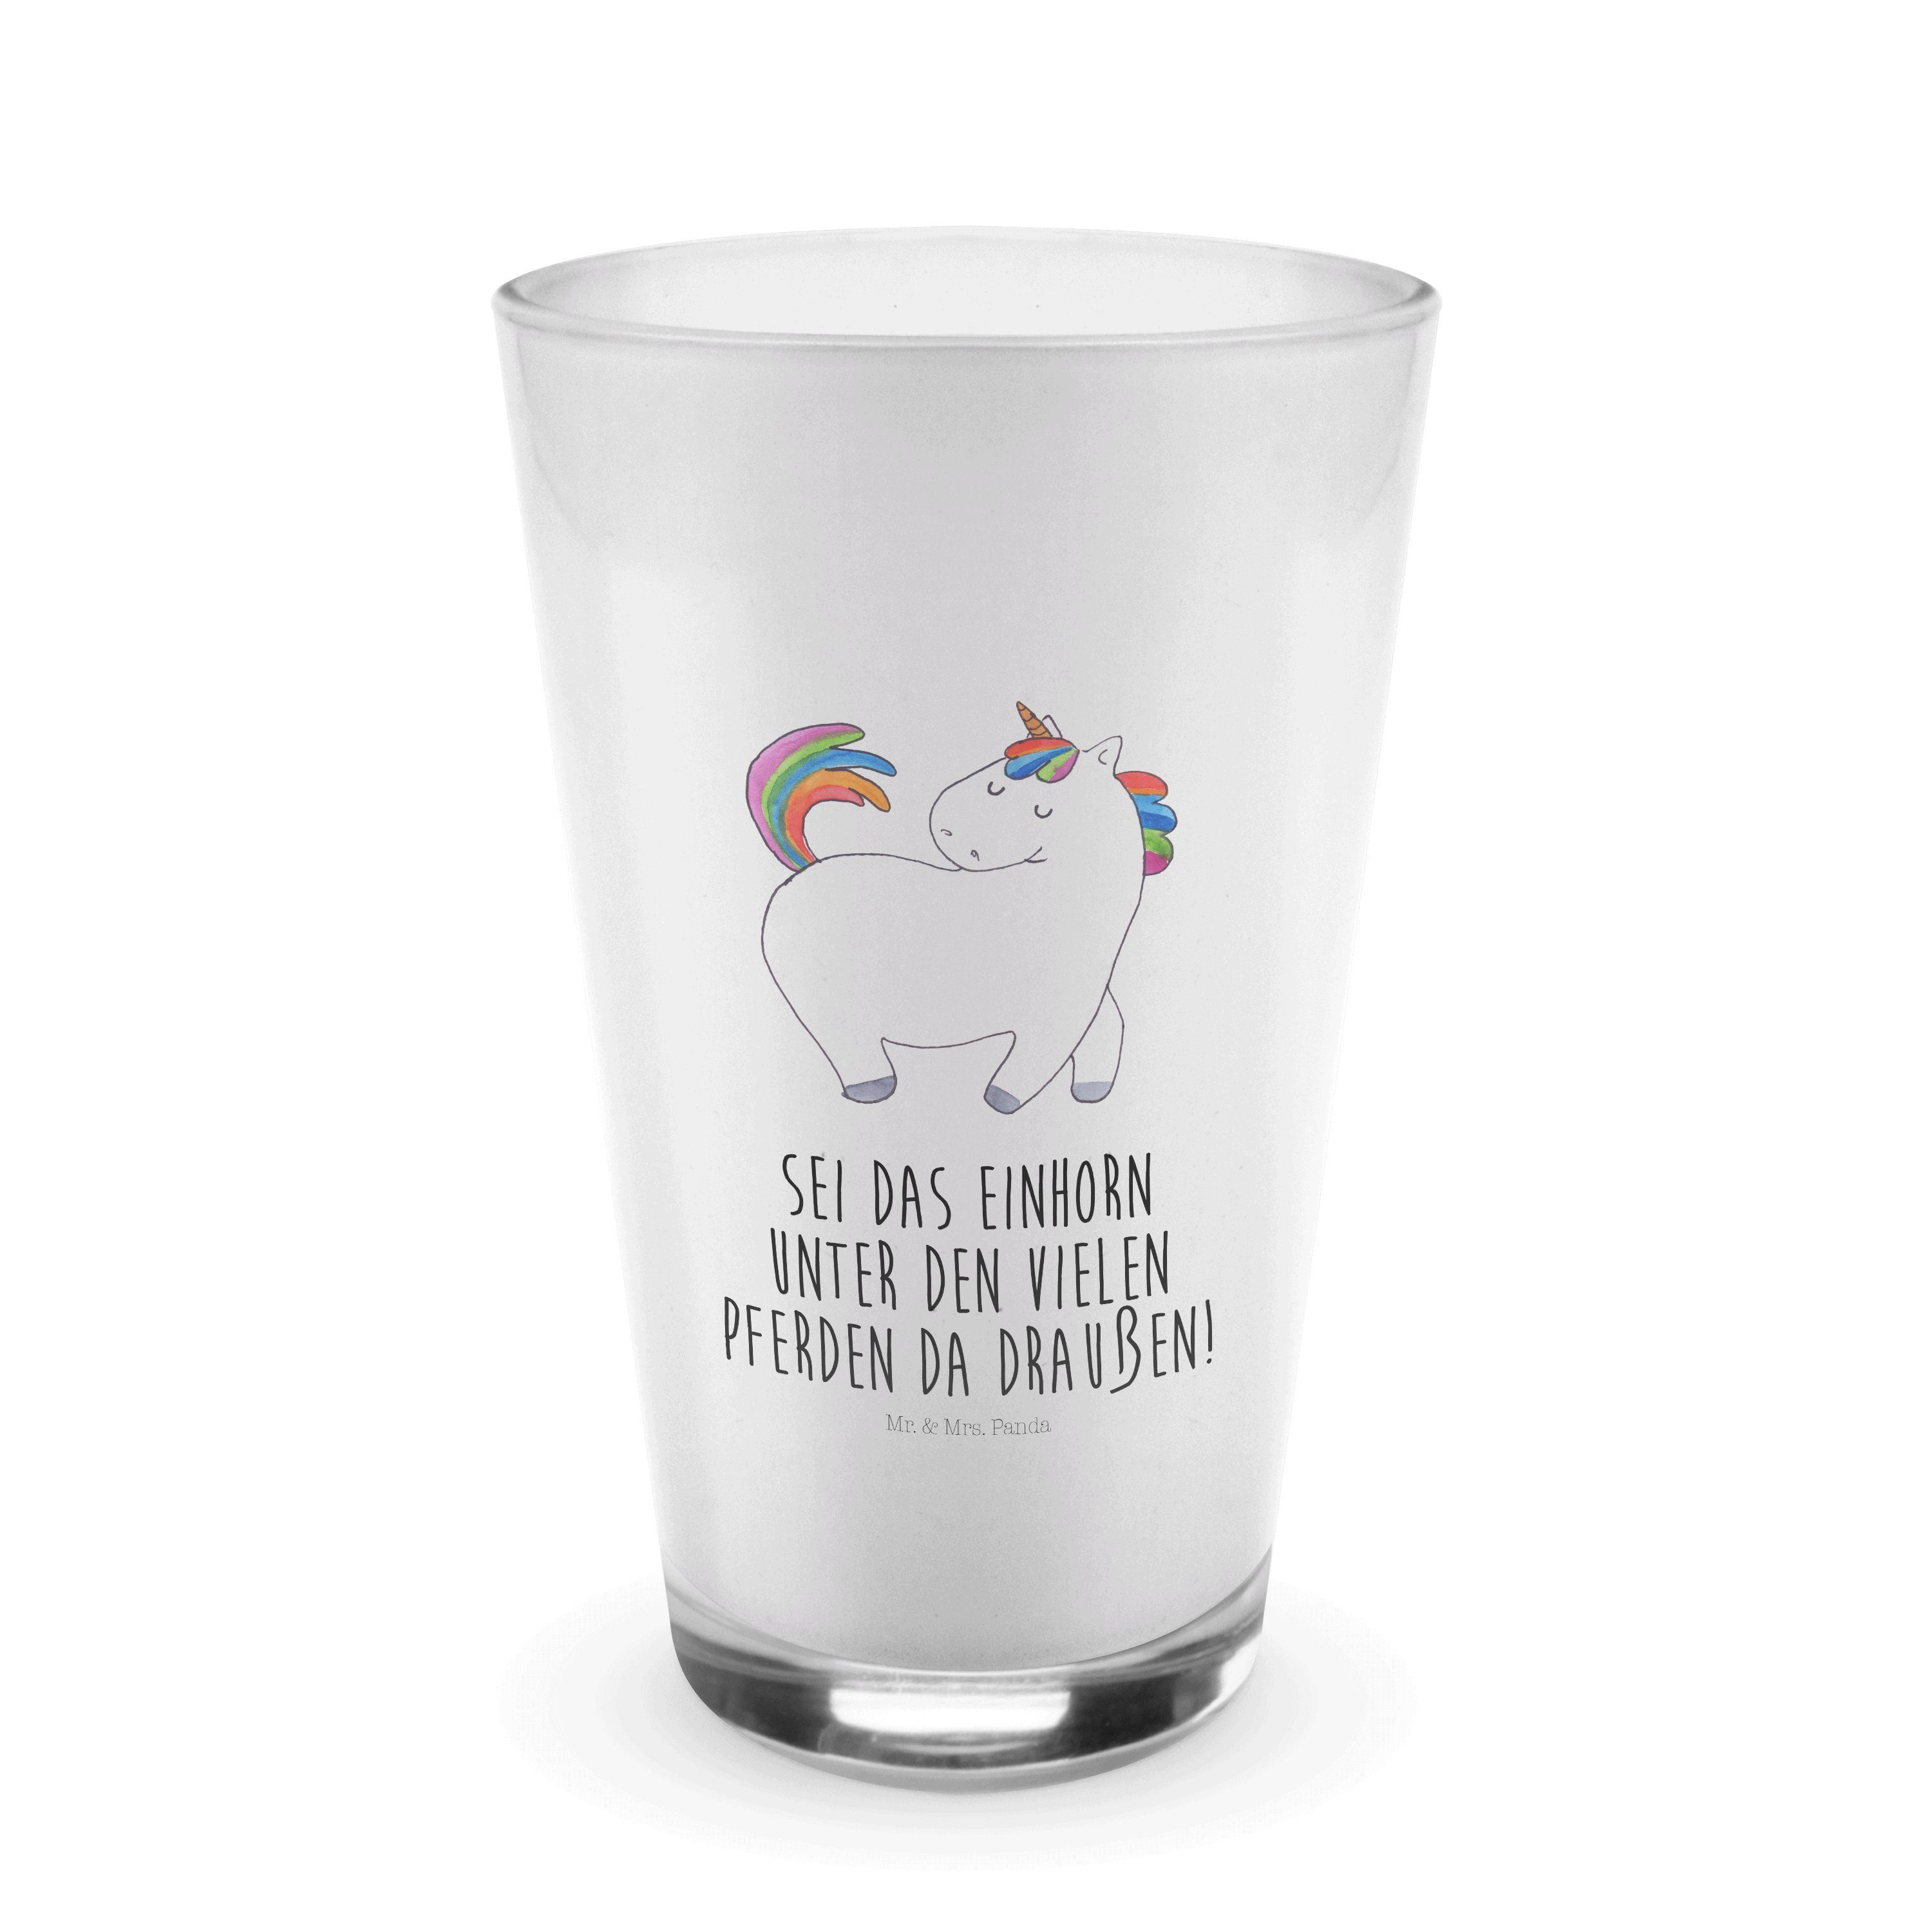 Mr. & Mrs. Panda Glas Einhorn stolzierend - Transparent - Geschenk, Glas, Cappuccino Glas, Premium Glas